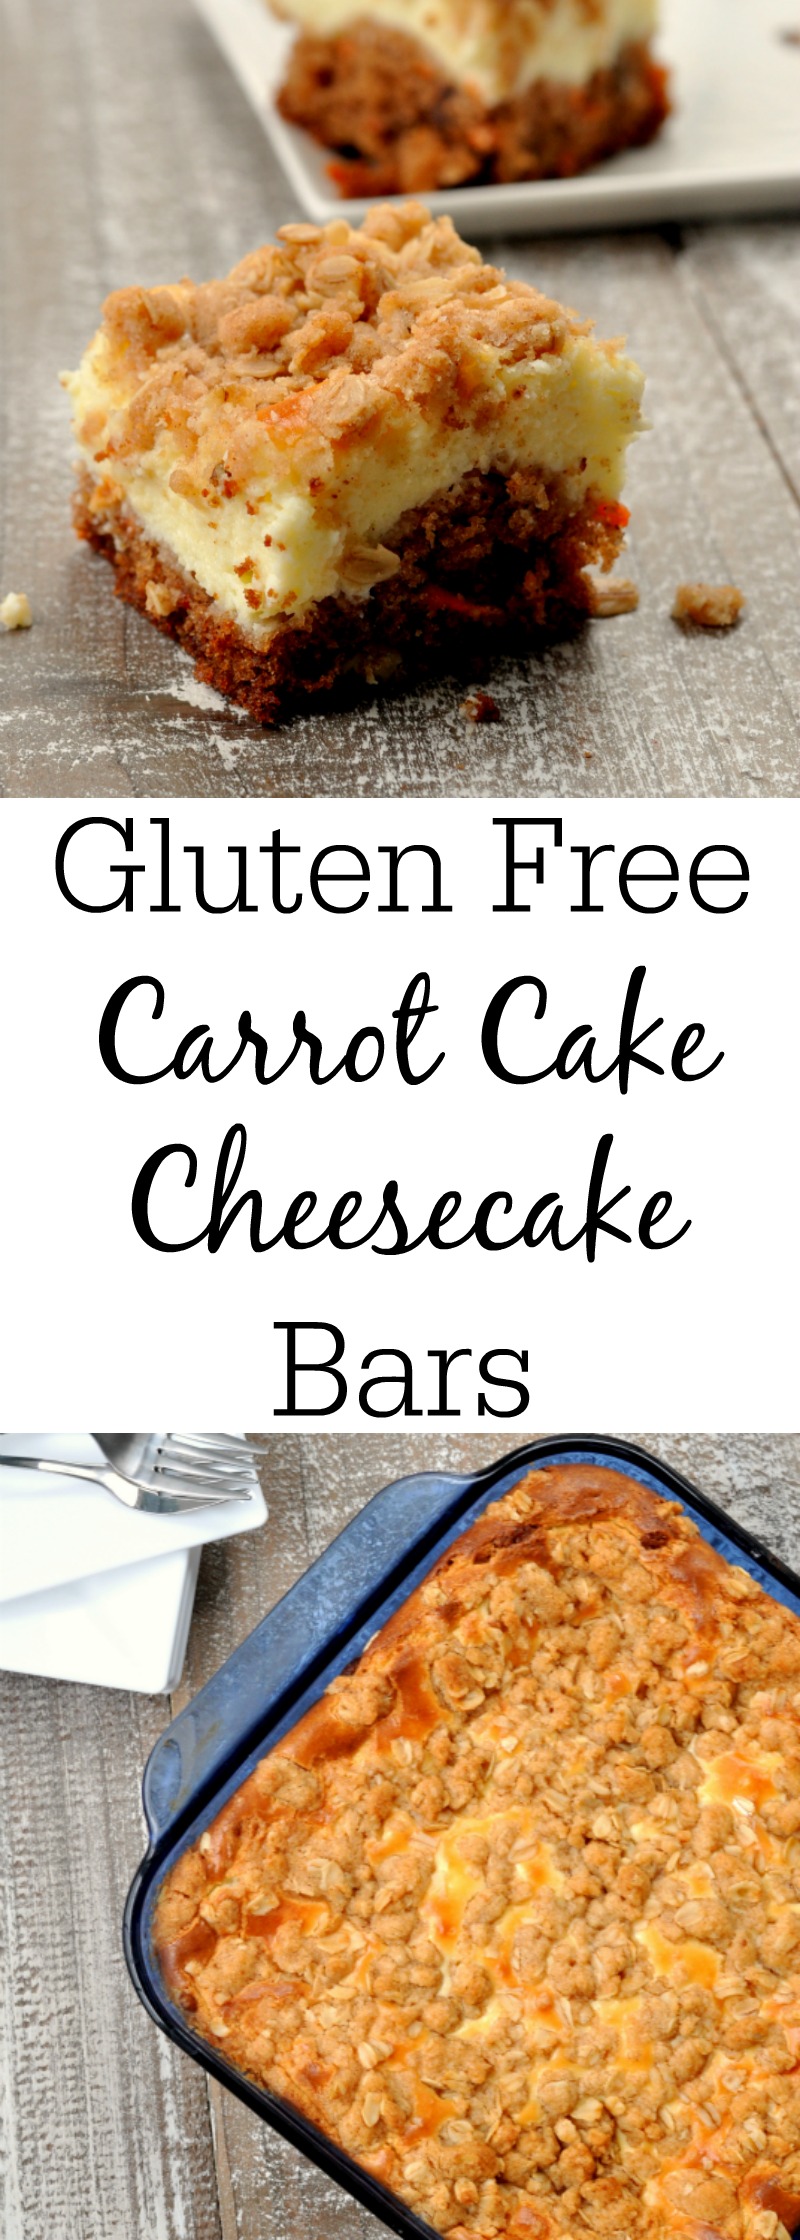 Gluten Free Carrot Cake Cheesecake Bars